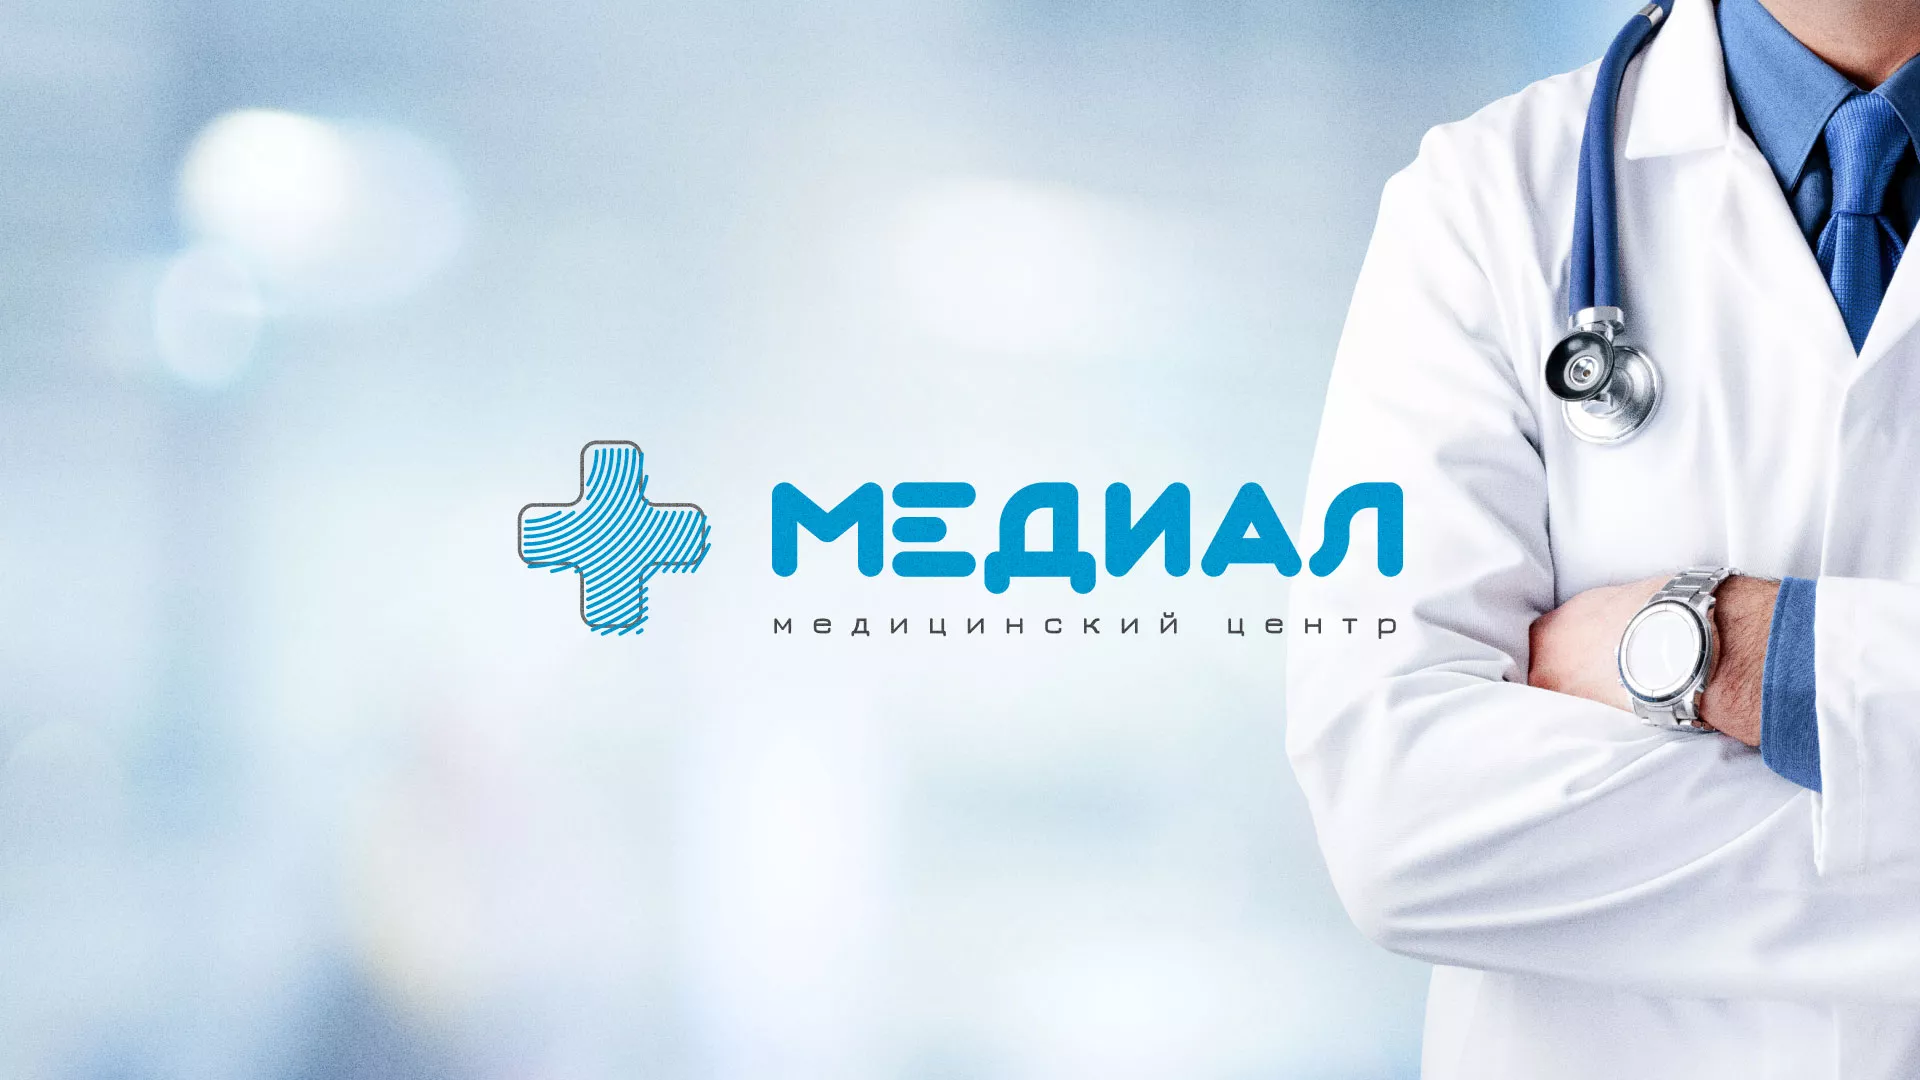 Создание сайта для медицинского центра «Медиал» в Грязовце